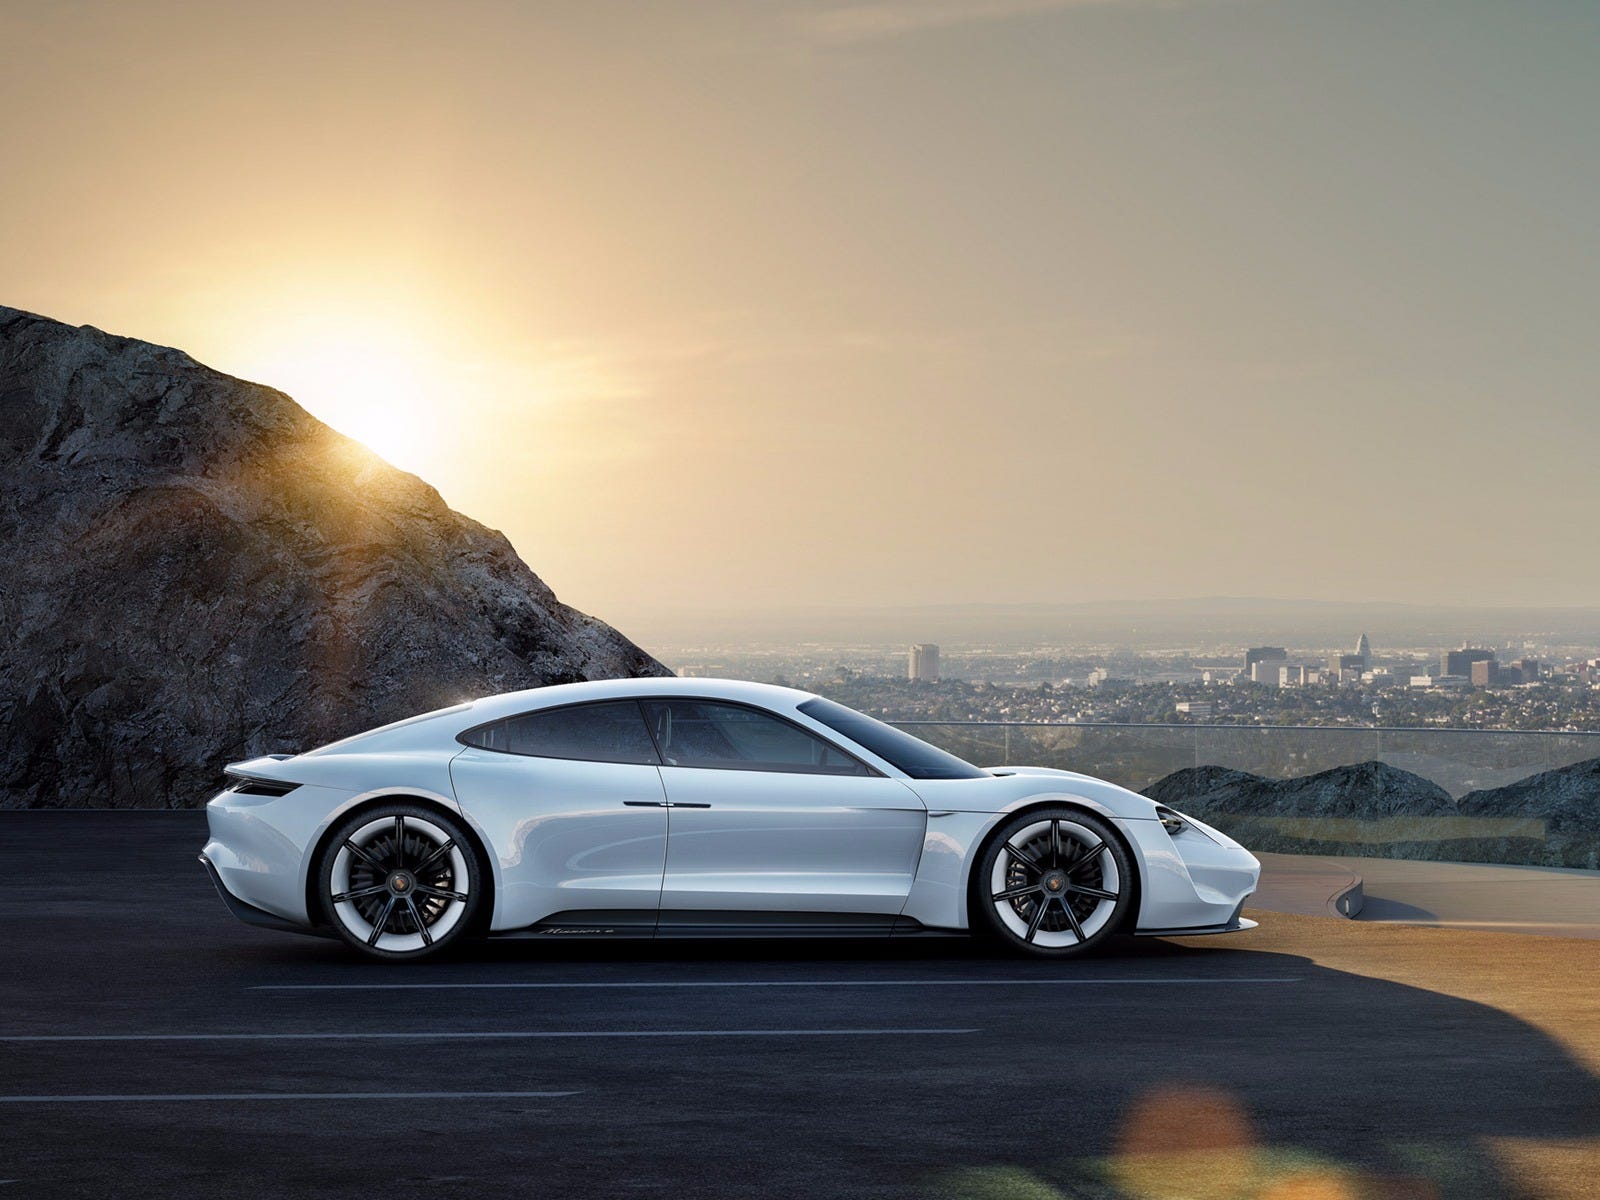 Porsche concept car driving